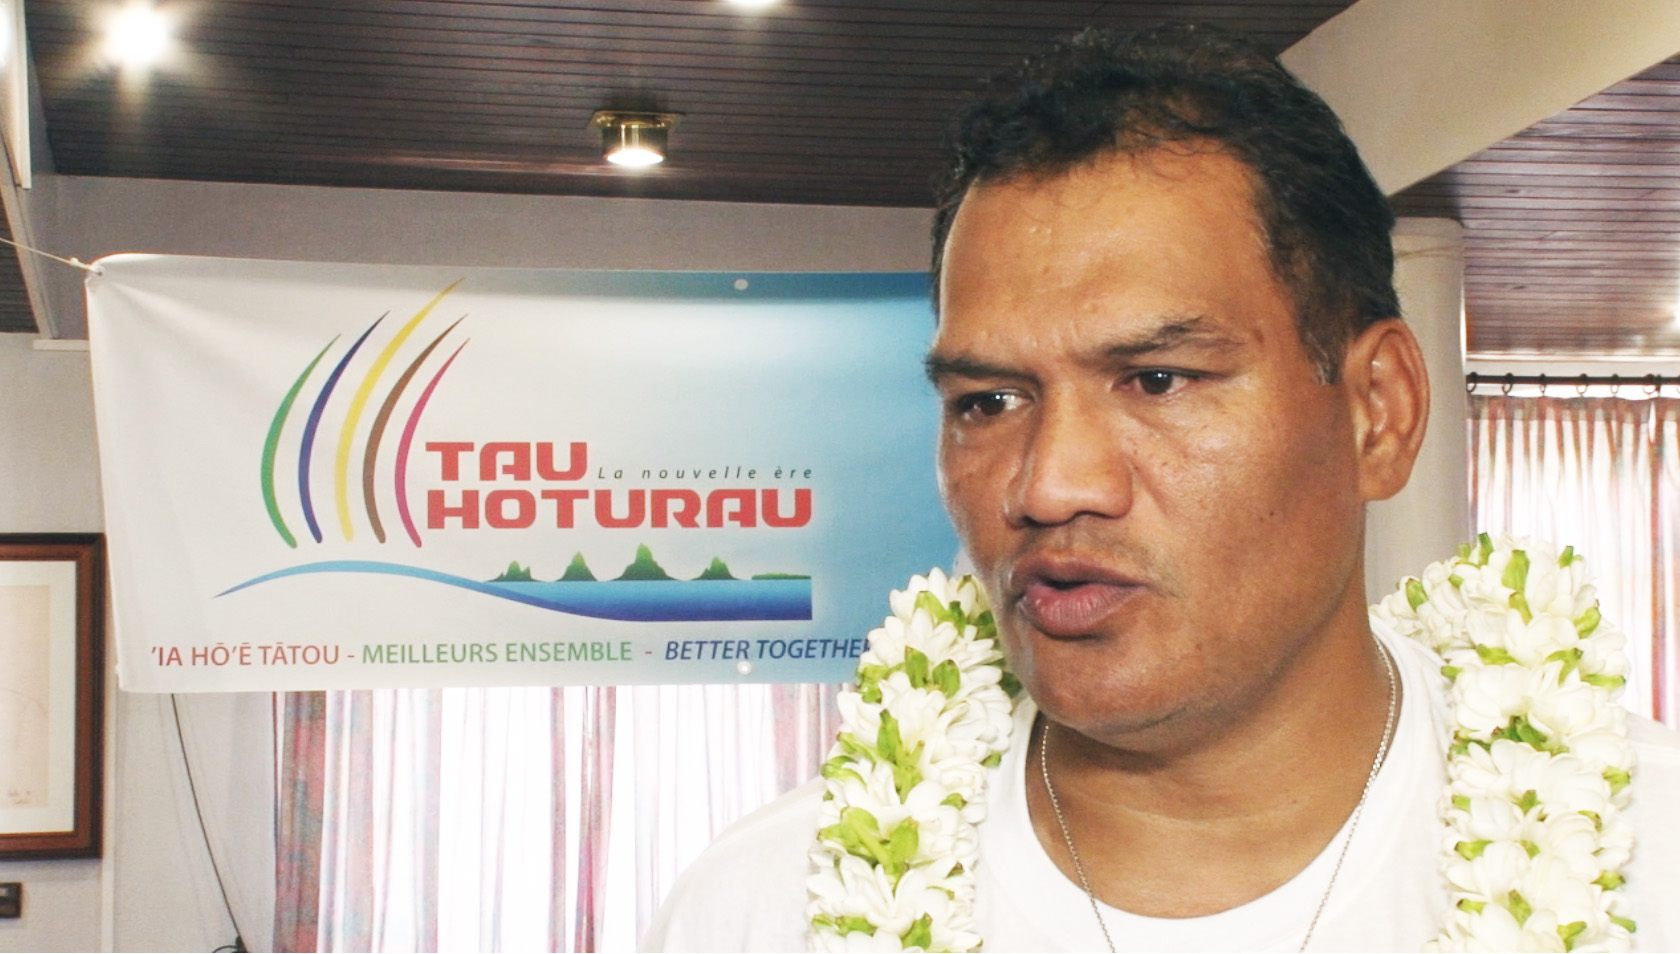 La semaine dernière, Tauhiti Nena a annoncé la création de son parti Tau Hoturau. Une annonce largement médiatisée et qui semble recevoir des avis positifs dans l'opinion publique polynésienne ©TNTV